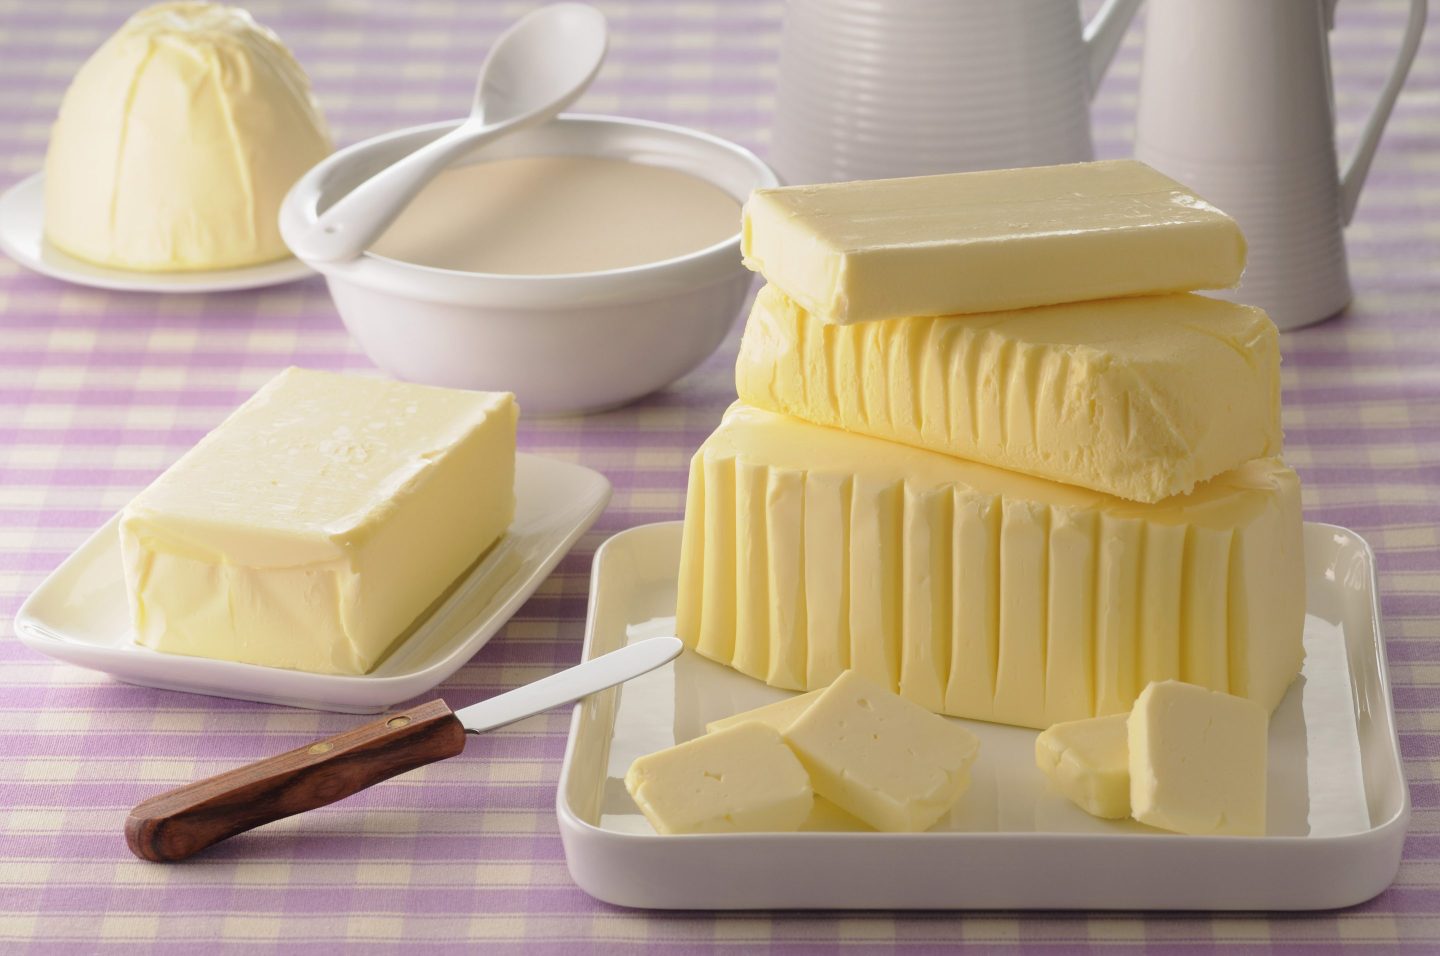 Assortment of butter